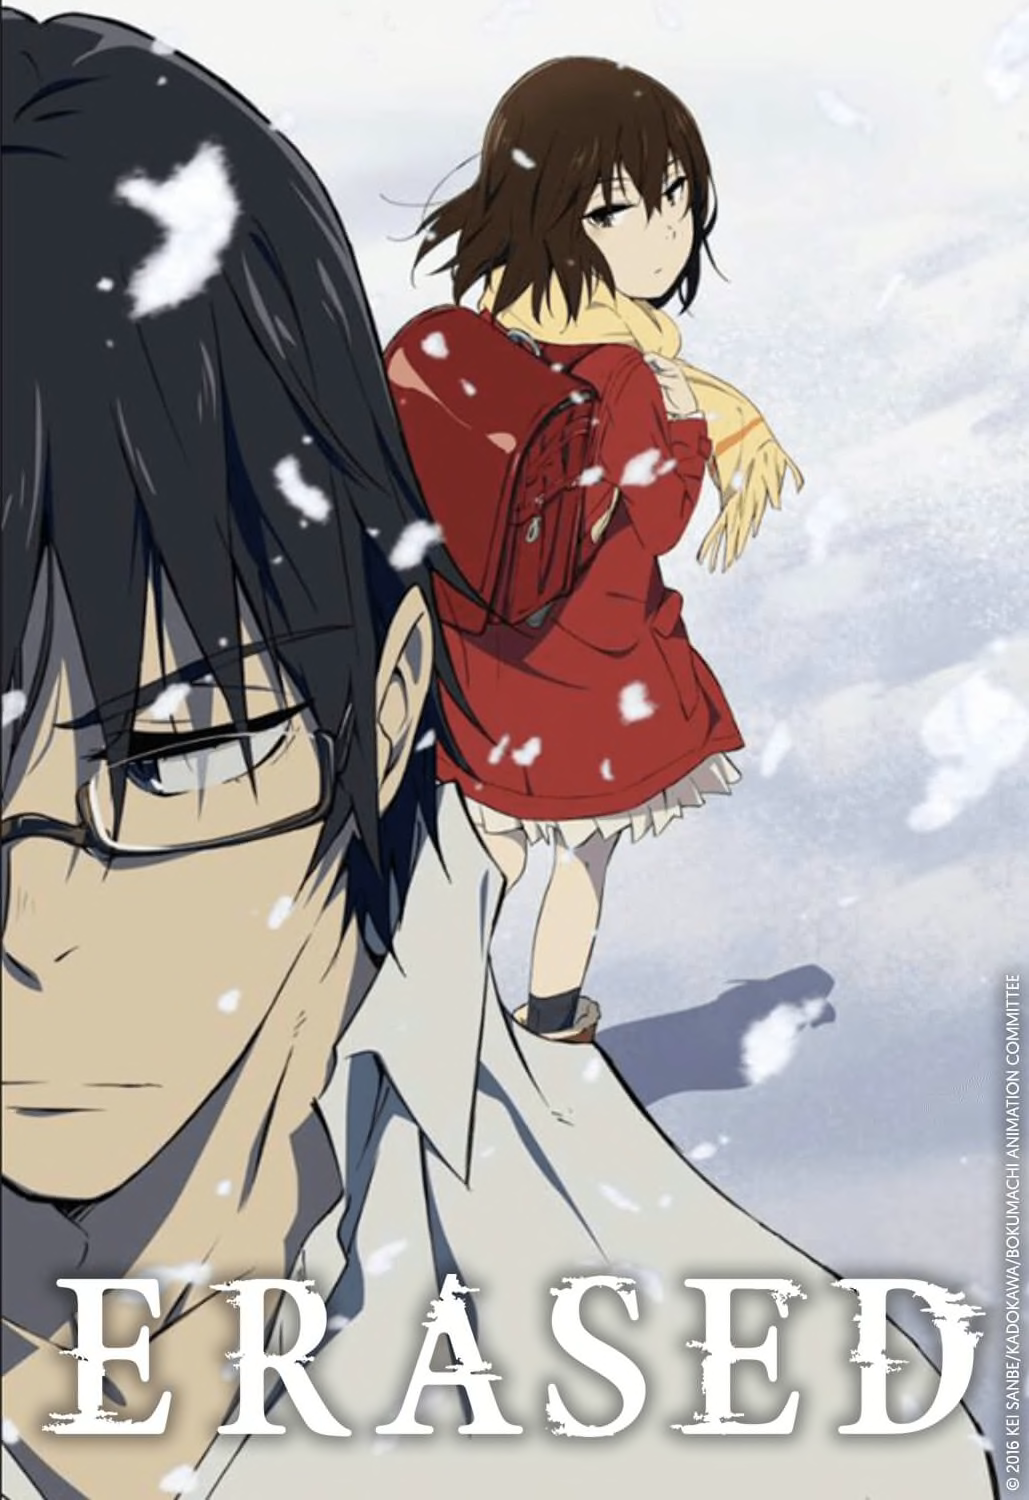 Infos - Erased (Boku dake ga Inai Machi) - Anime streaming in English sub,  in HD and legally on 